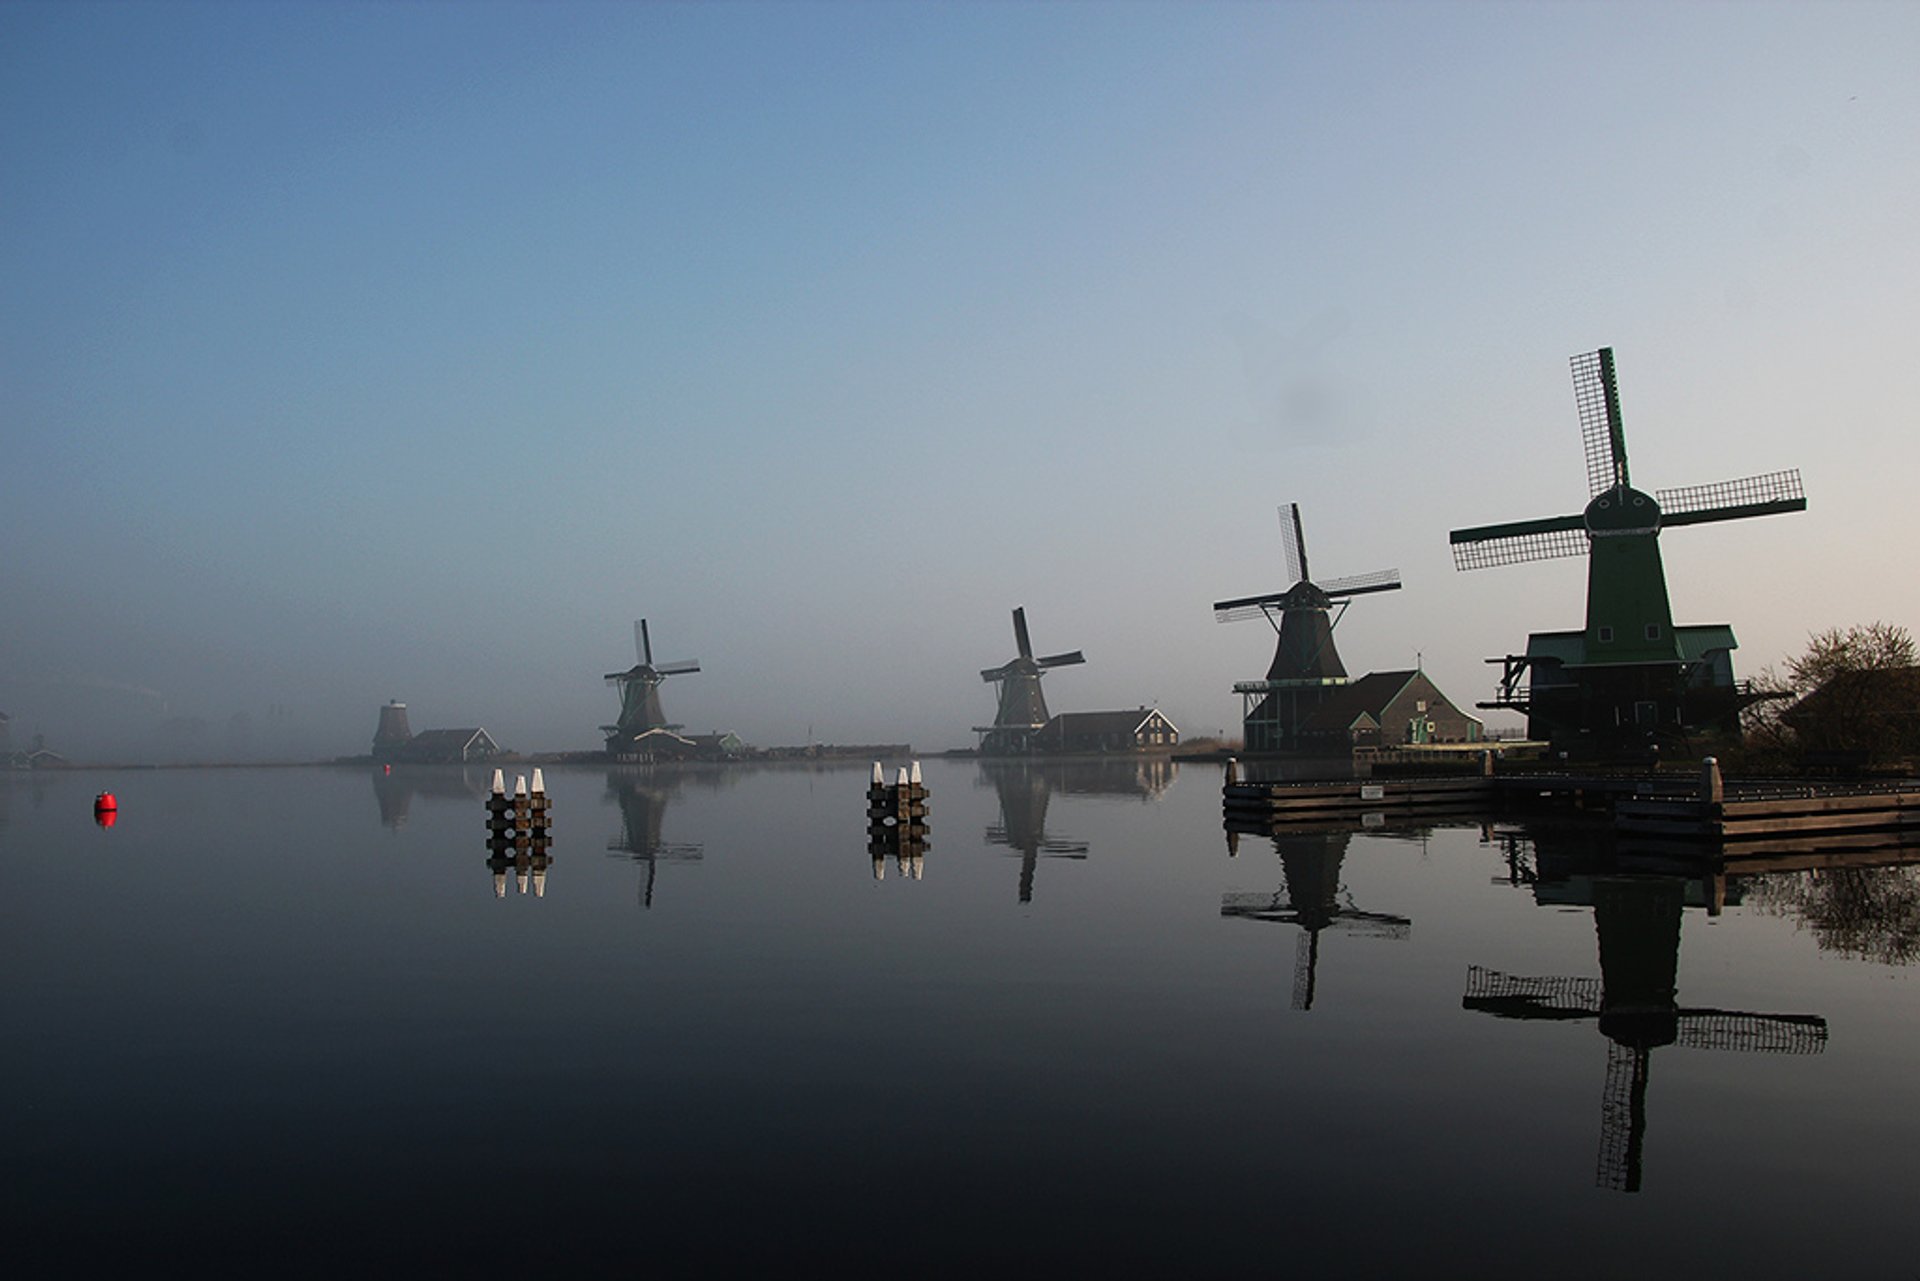 Campo holandês e moinhos de vento